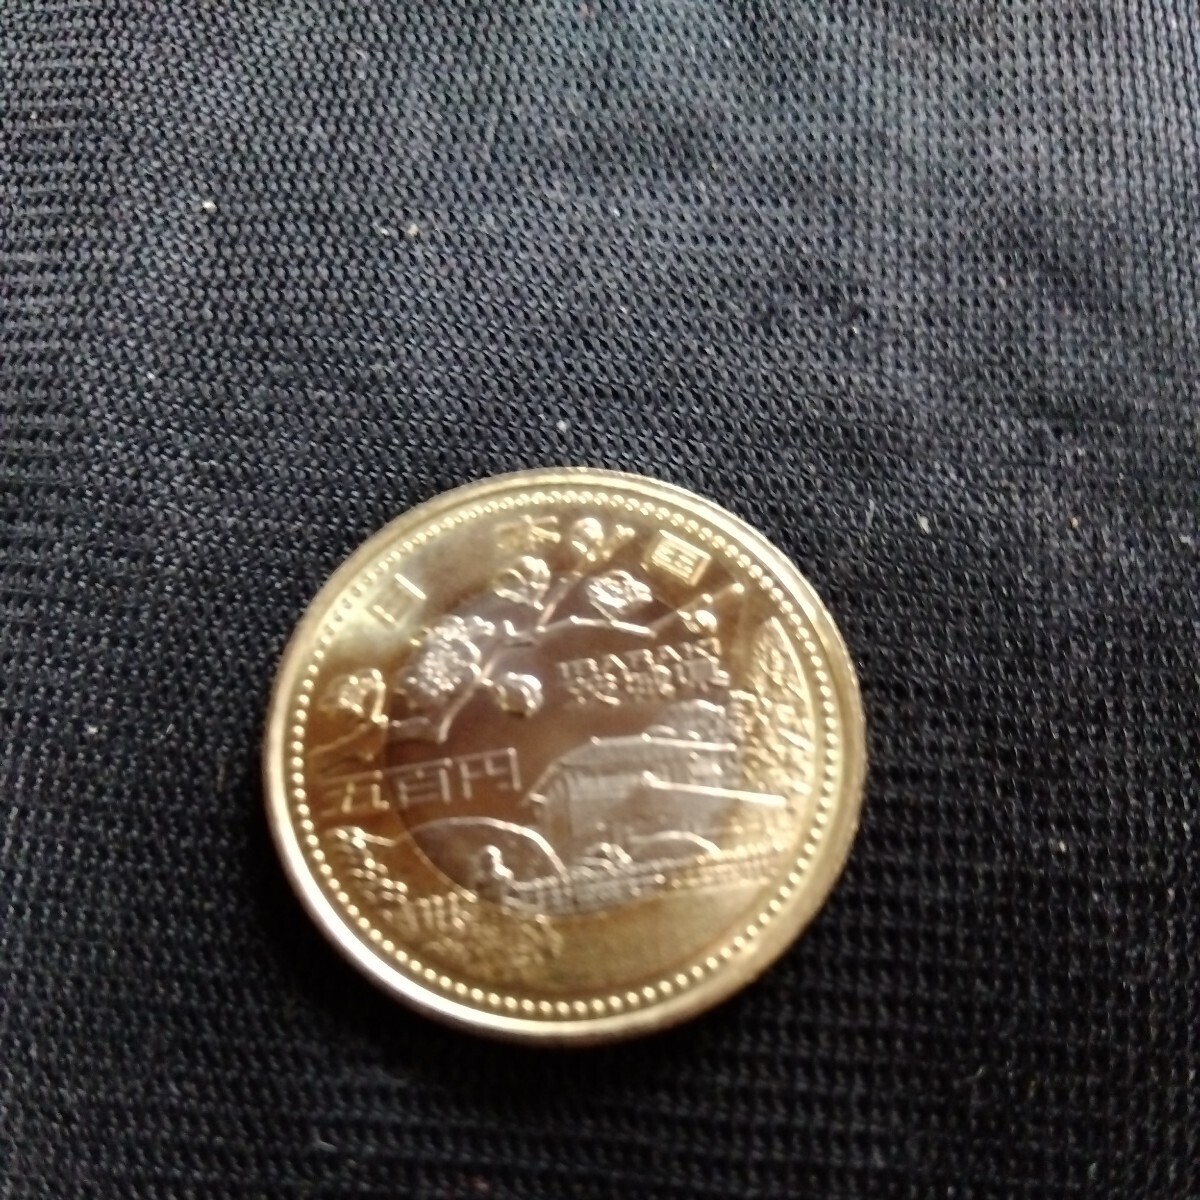 記念硬貨 地方自治法施行60周年記念 茨城県 500円バイカラー・クラッド貨幣 １枚 未使用の画像1